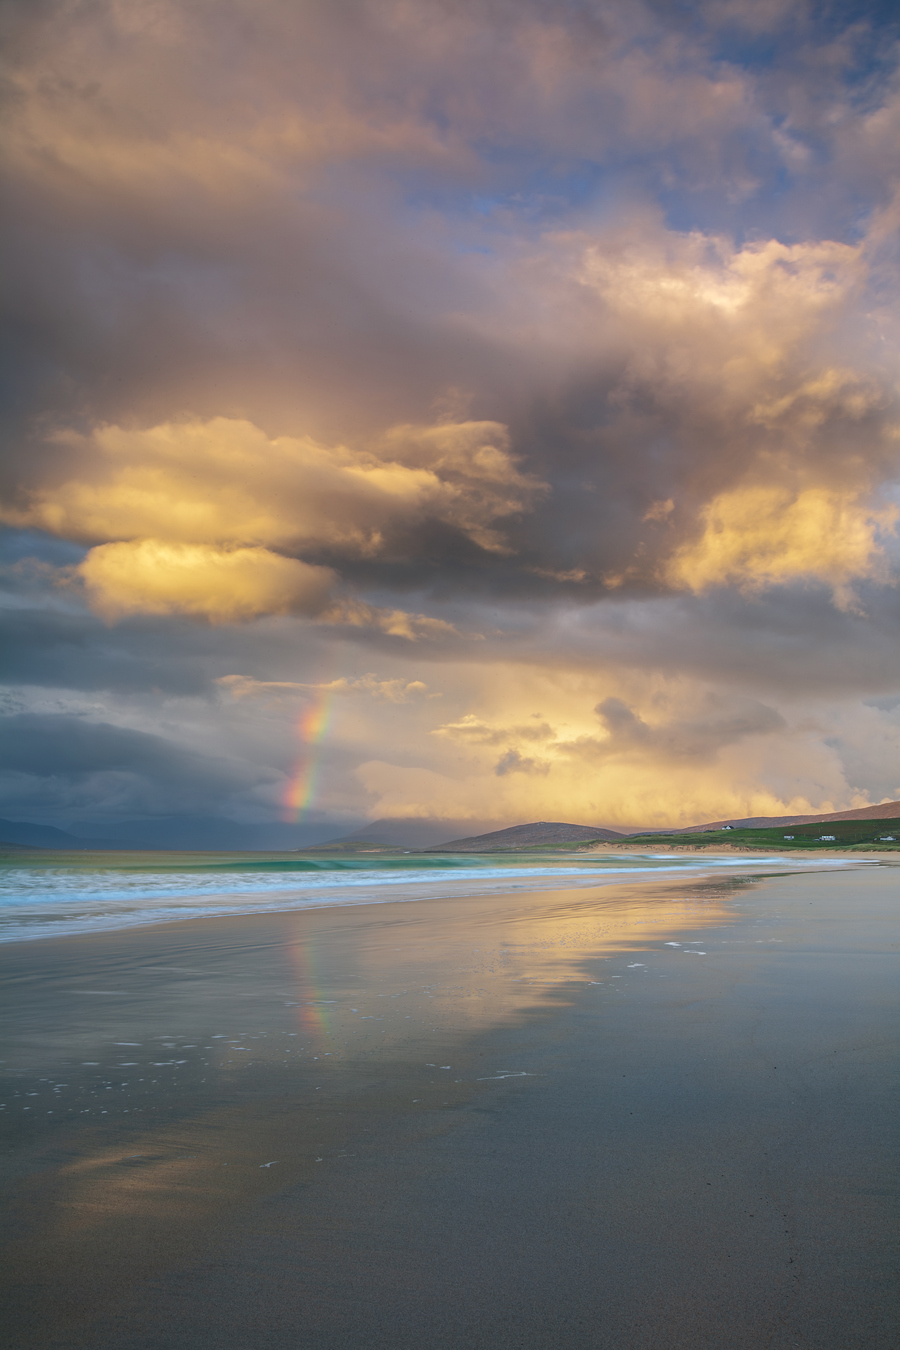  a beach with a rainbow in the sky